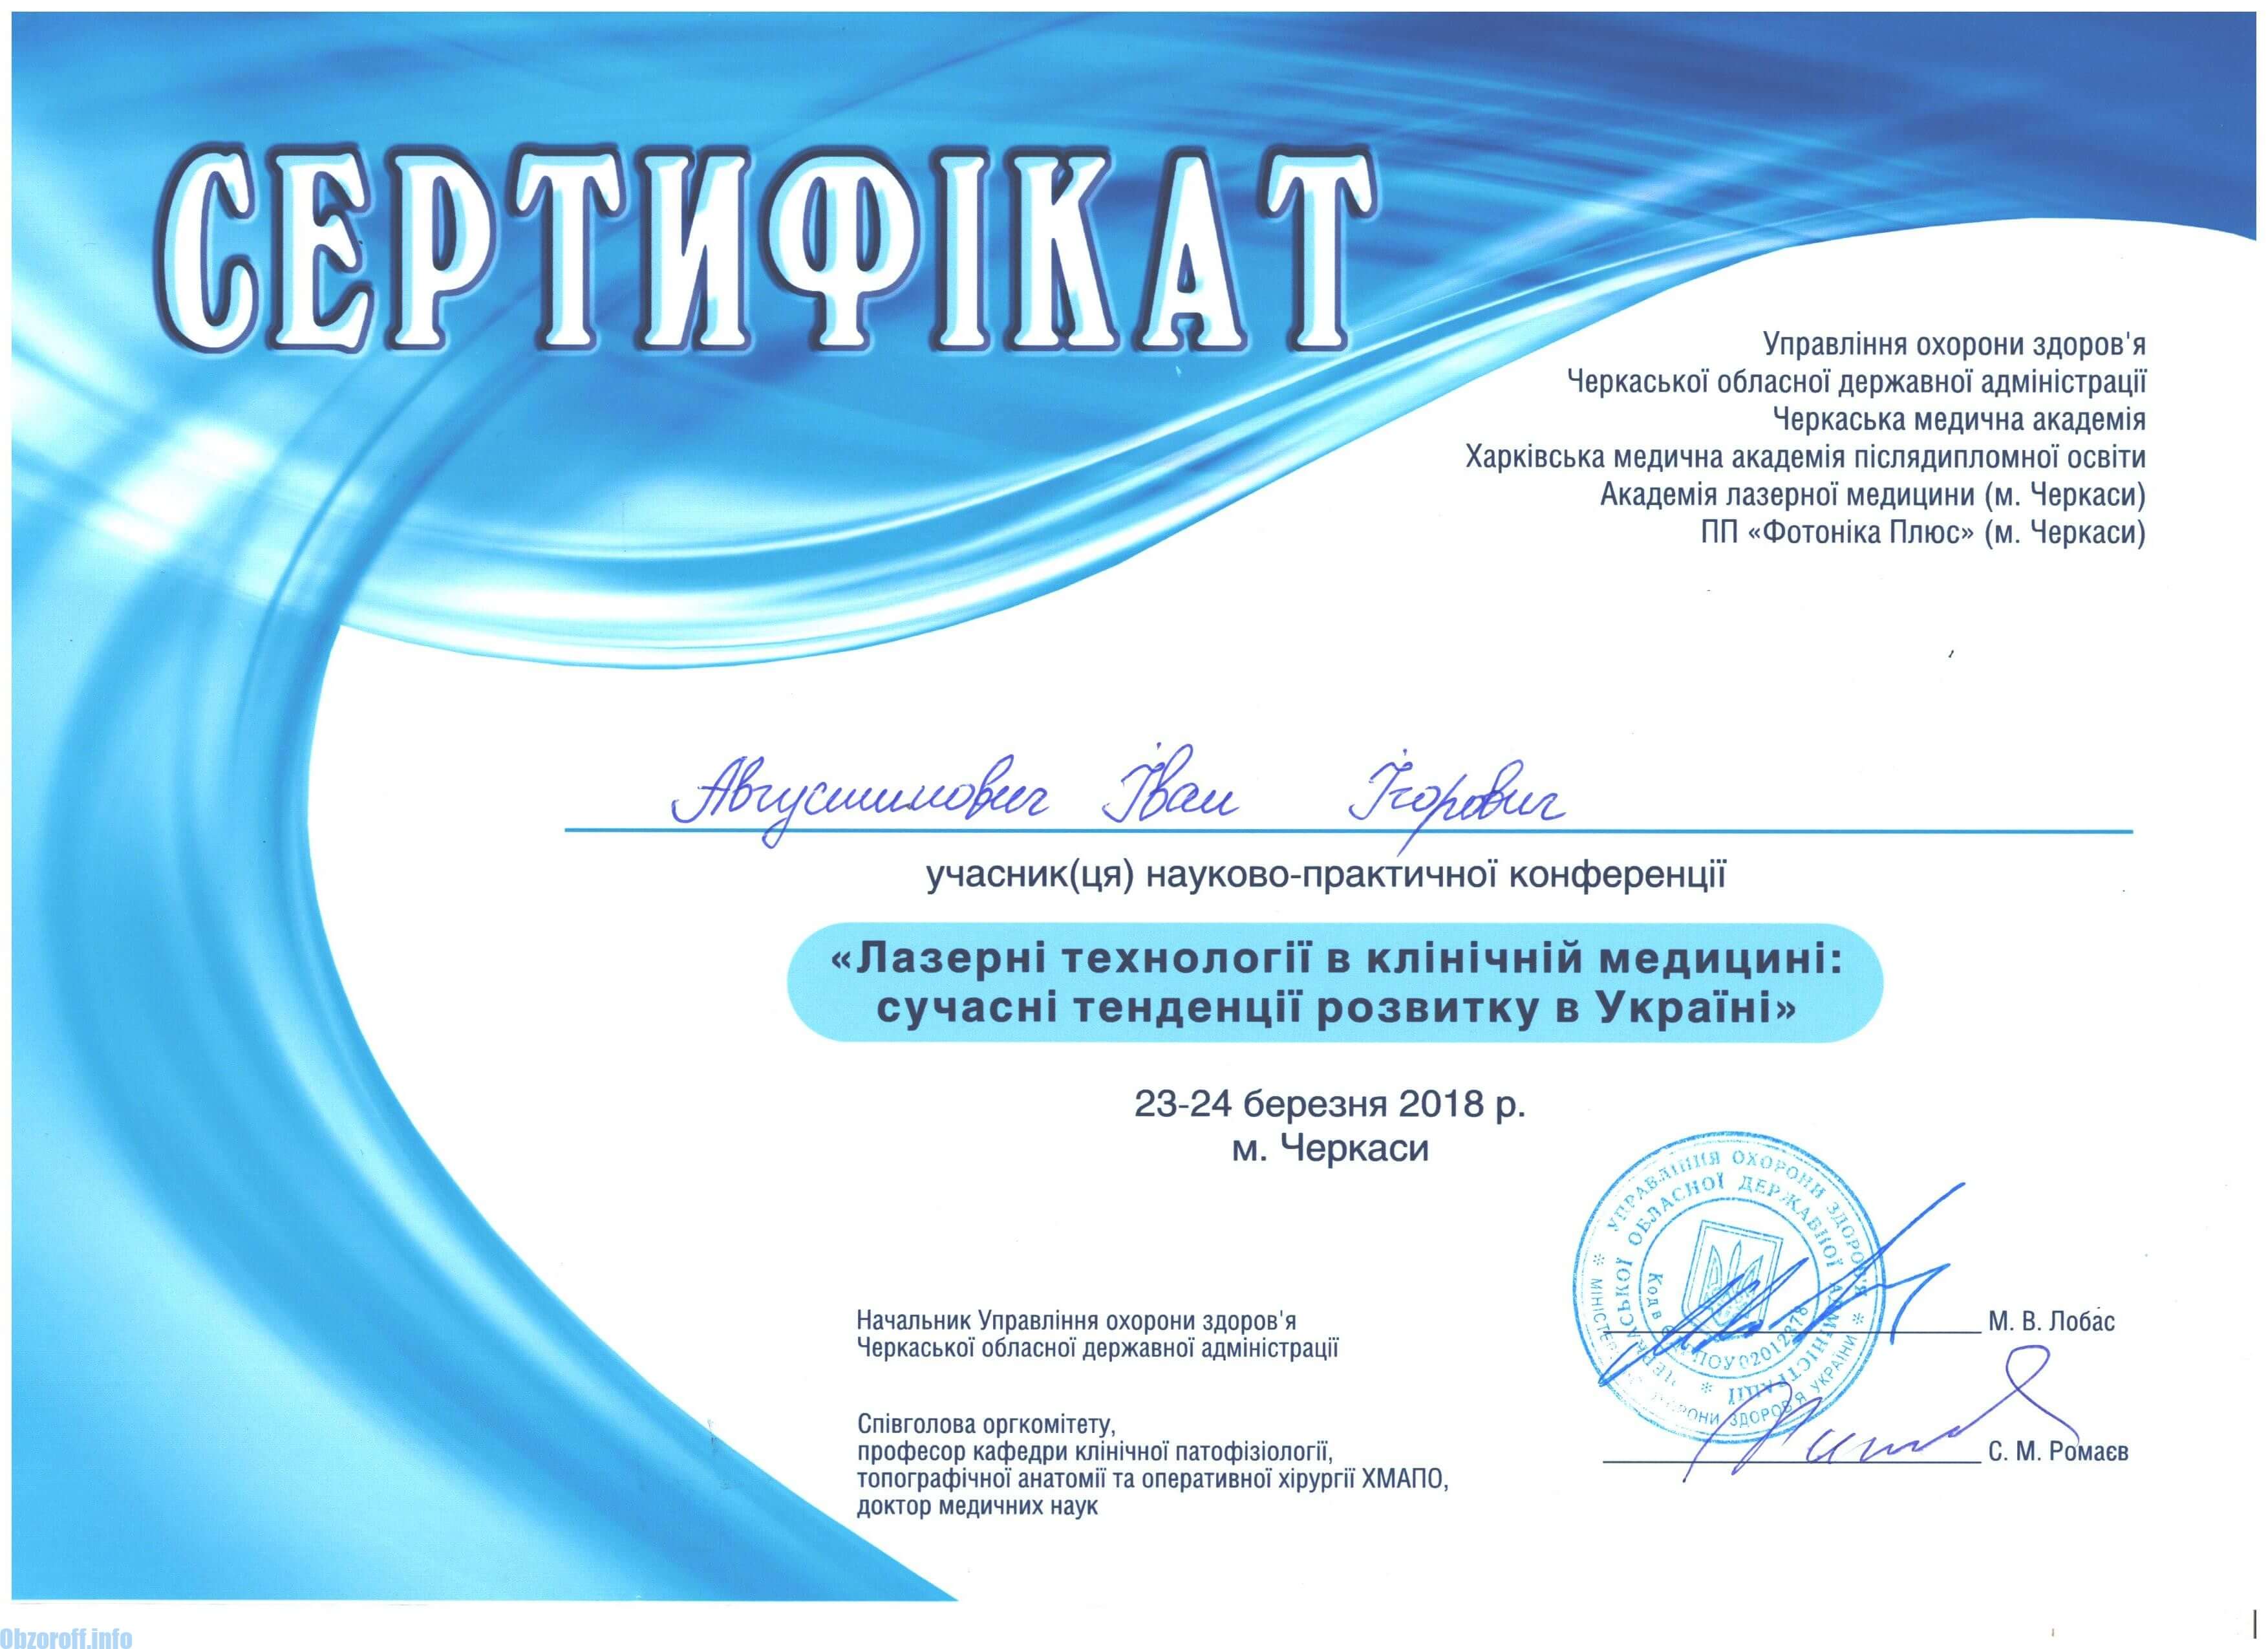 Laser tehnologija certifikata u kliničkoj medicini